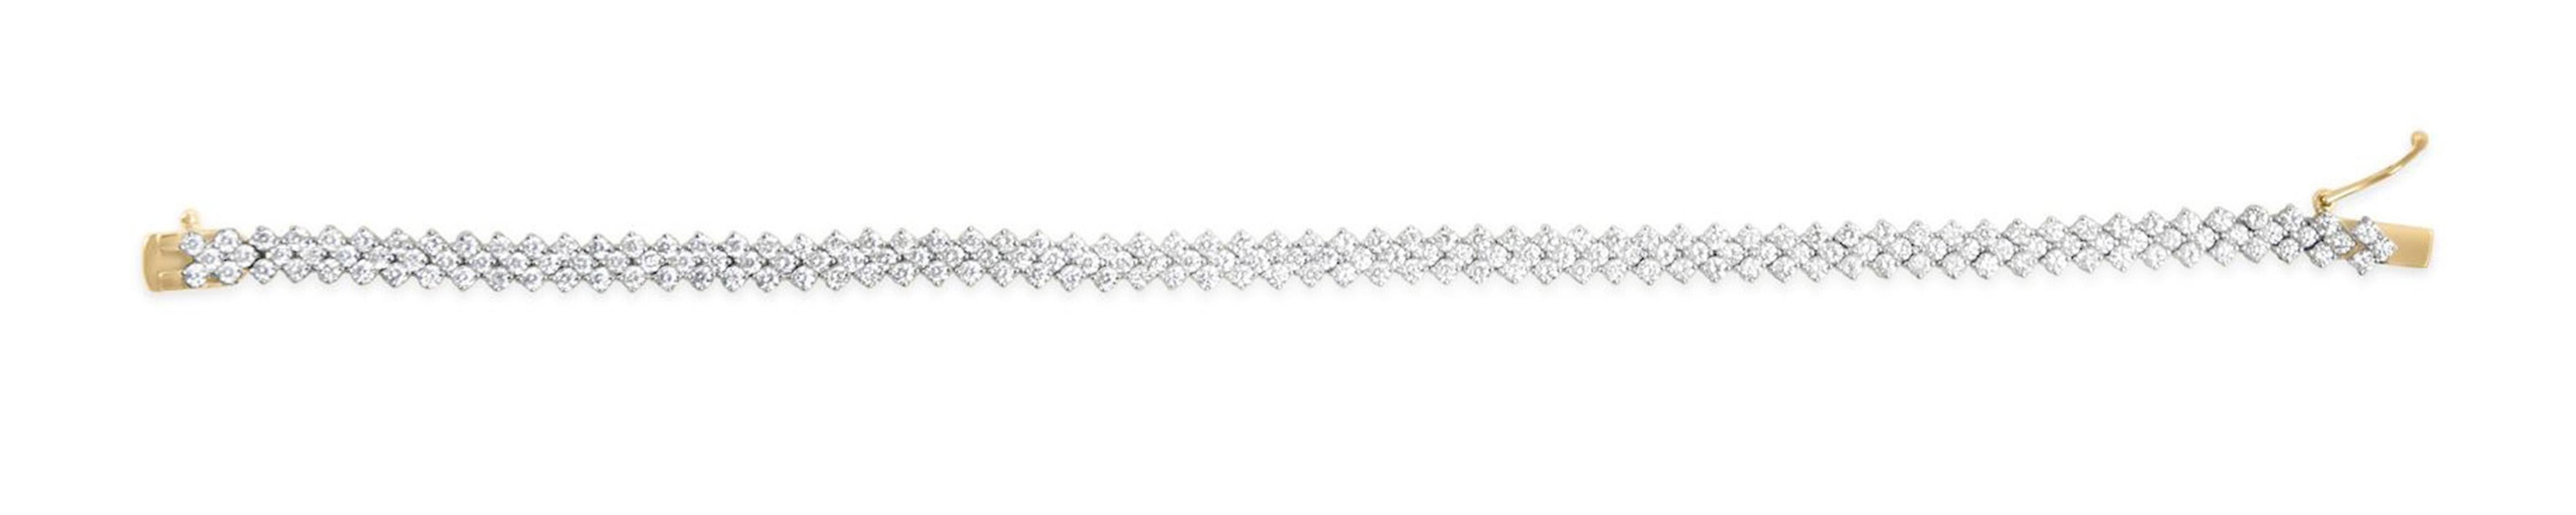 Taille ronde Bracelet diamant Chevron taille ronde brillante 4 carats or jaune 14K en vente